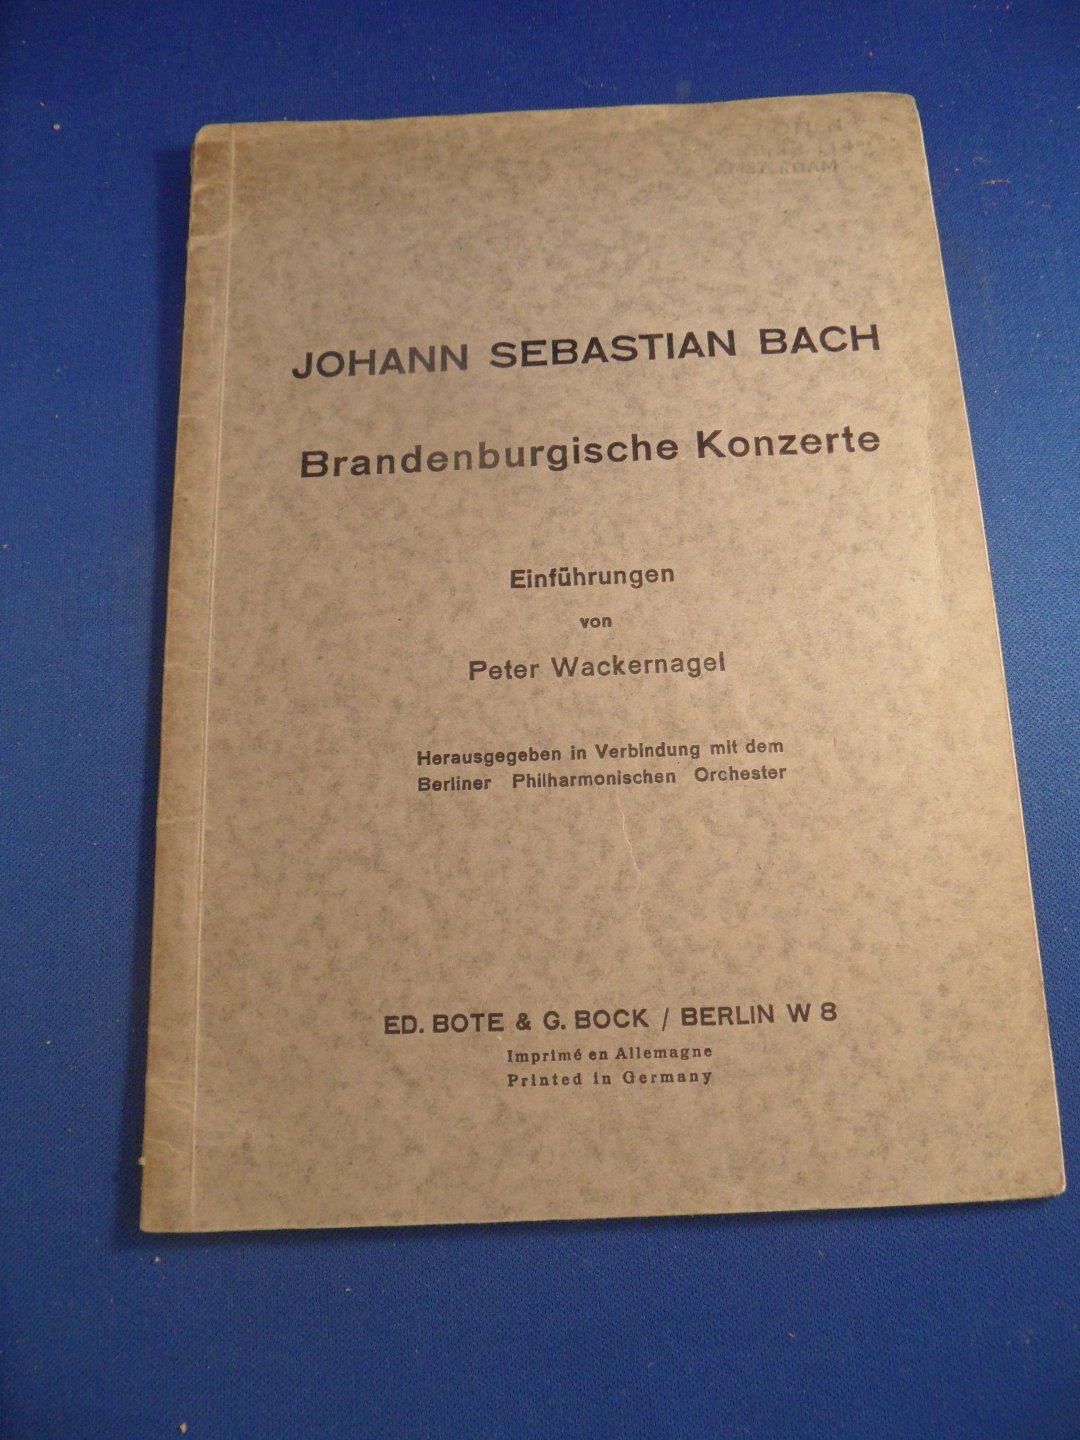 Wackernagel, Peter - Johann Sebastian Bach Brandenburgische Konzerte